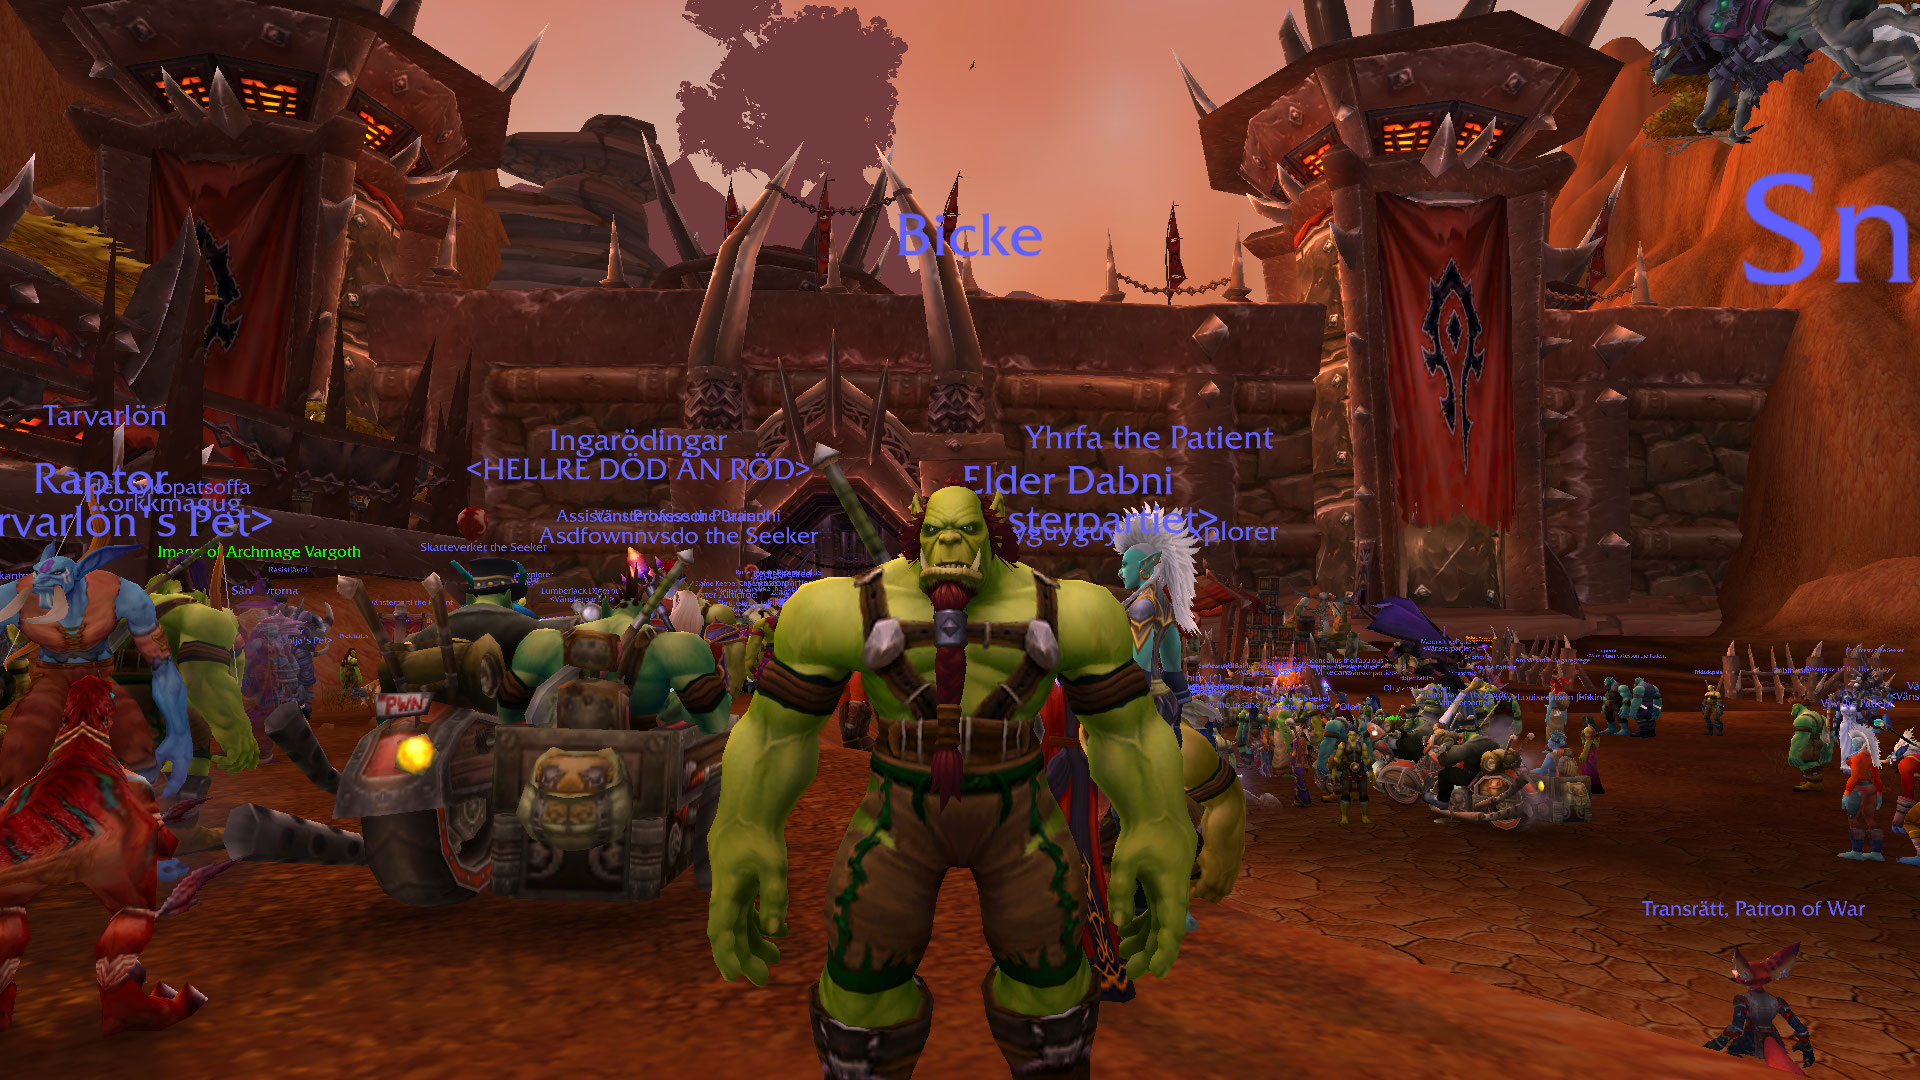 Boomerdoftande första maj-firande i World of Warcraft